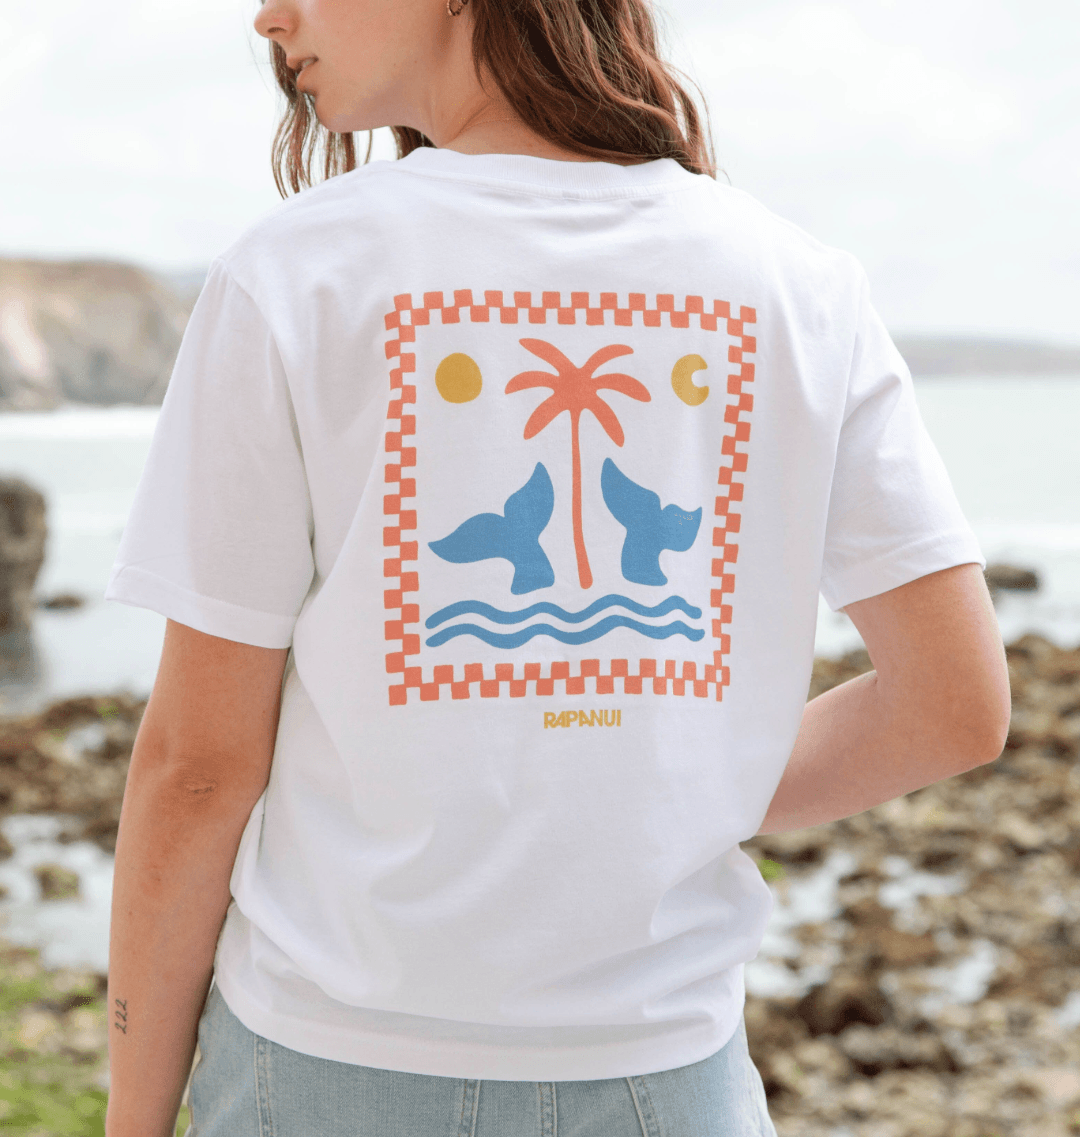 Ocean Life T - Shirt - Printed T - shirt